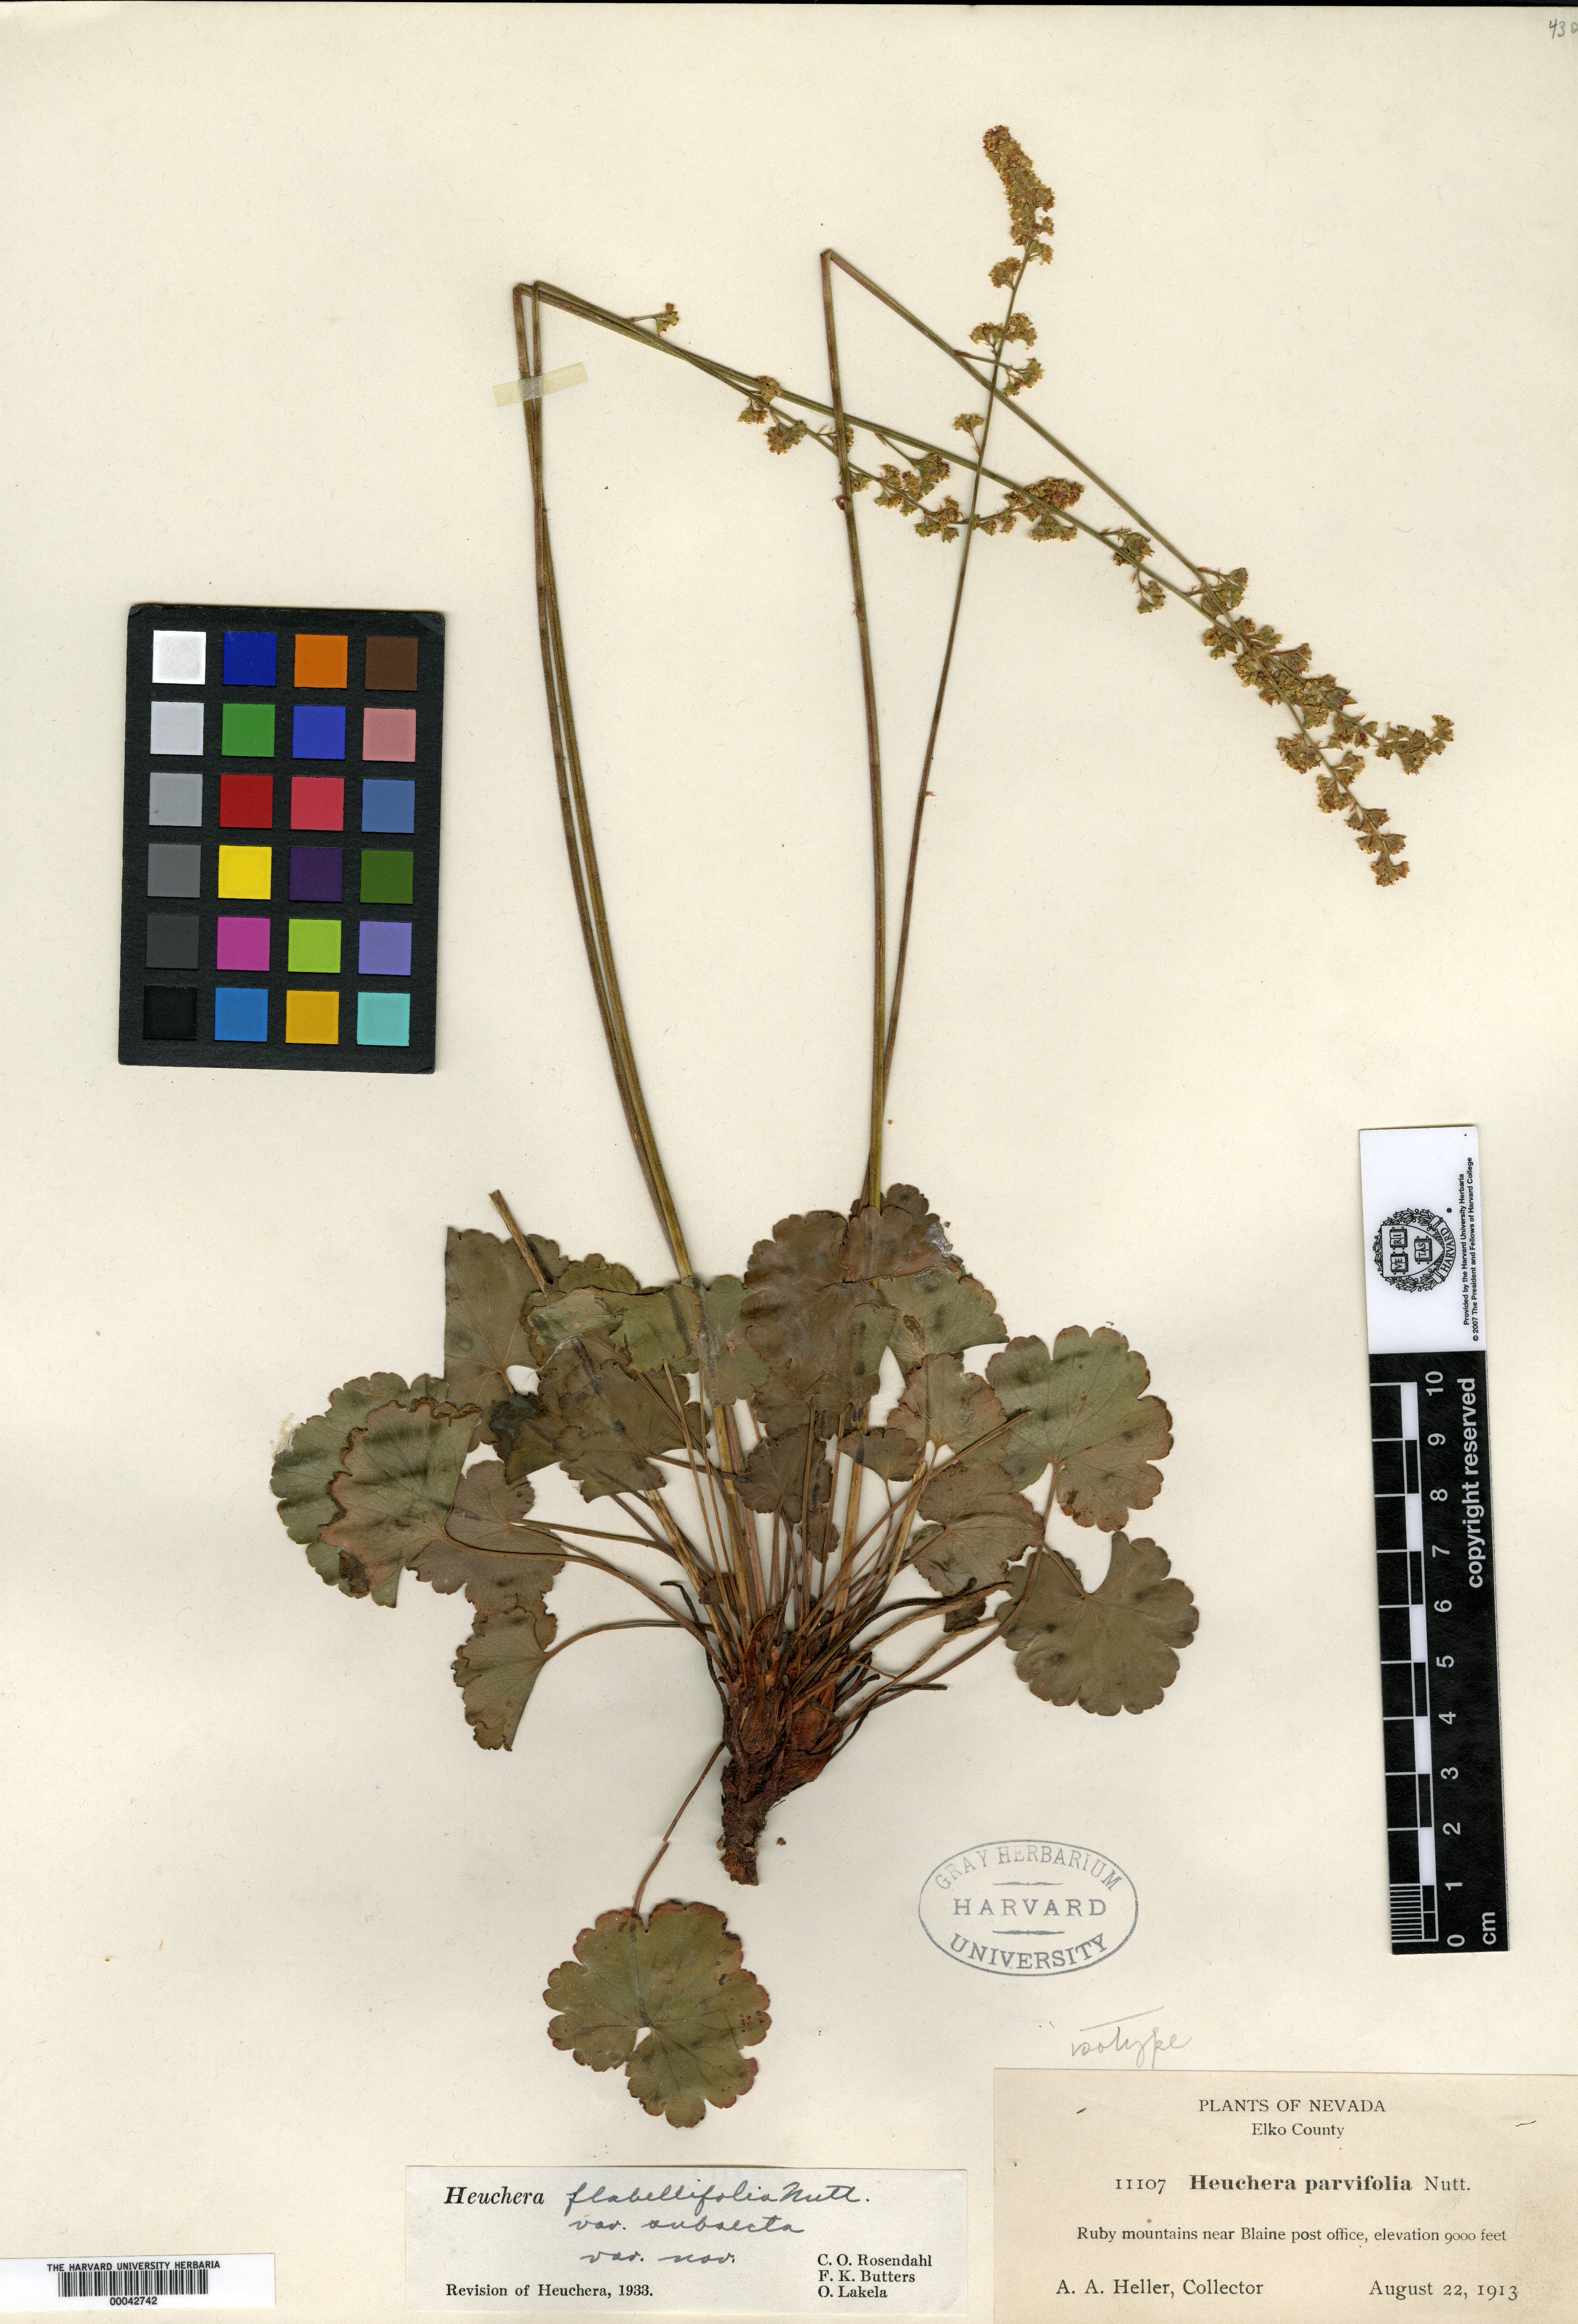 Heuchera flabellifolia var. subsecta image